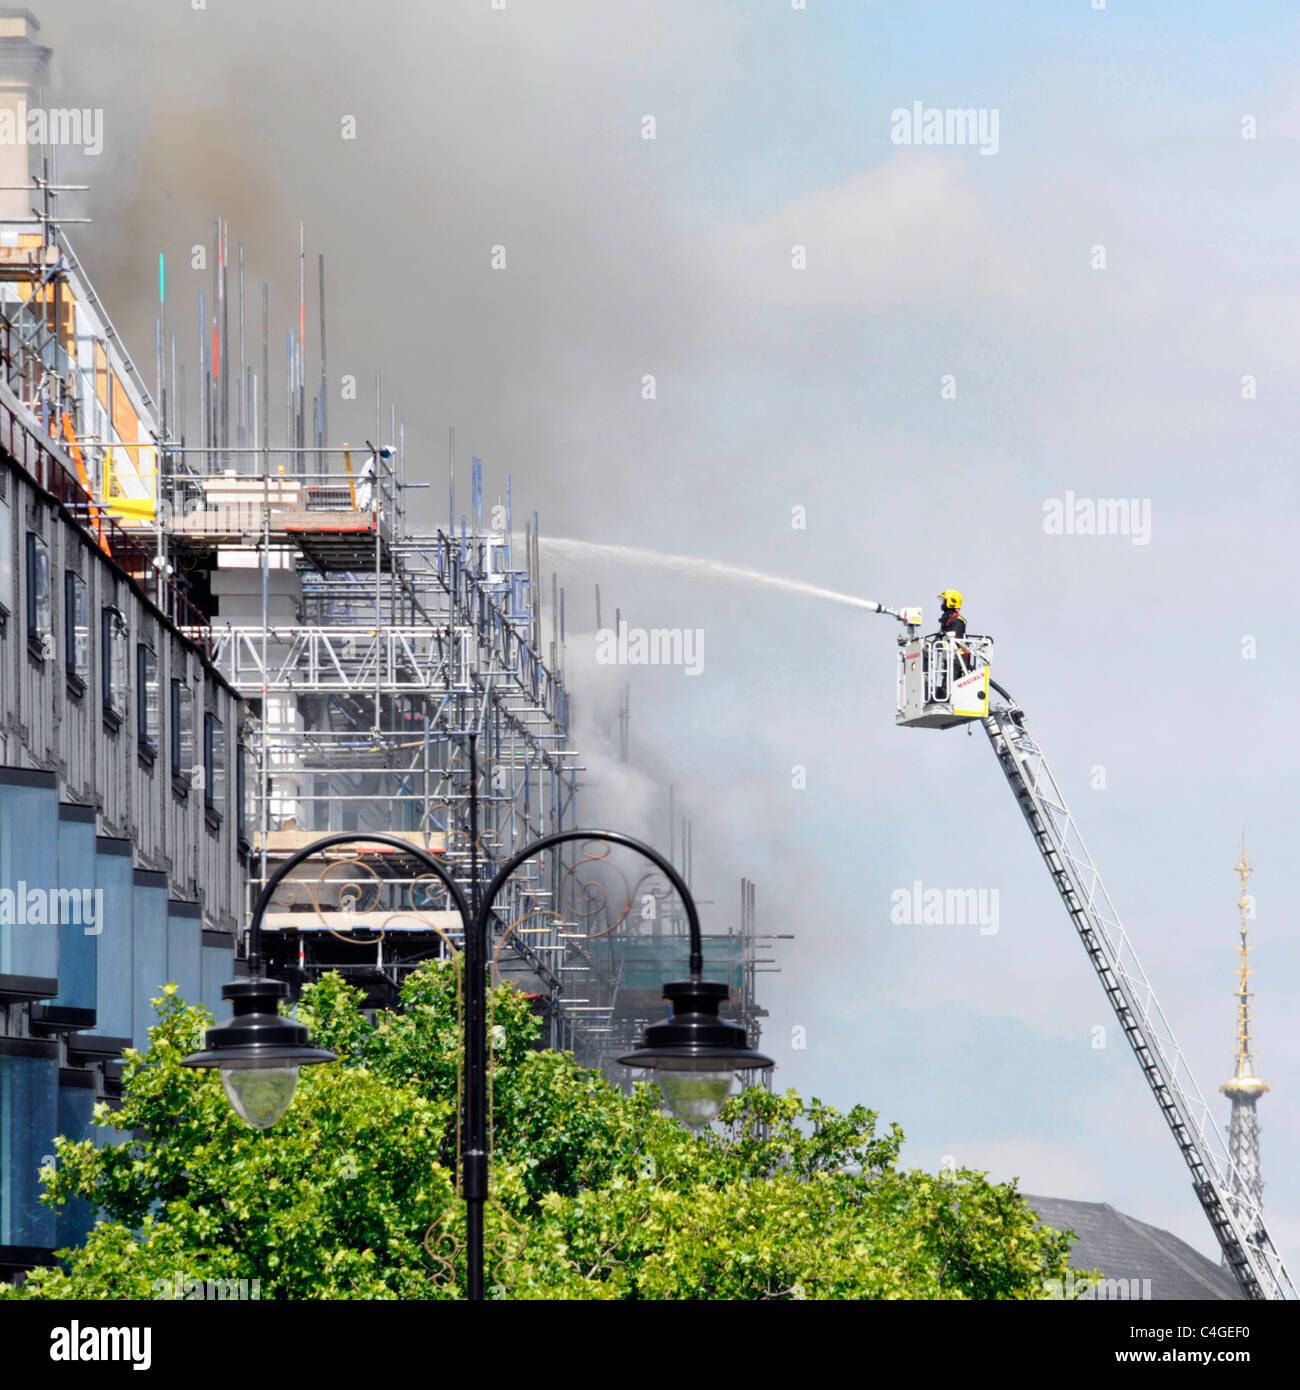 Pompier sur la plate-forme d'accès pulvérisant de l'eau sur le feu de toit à la maison Marconi reconstruction chantier de construction le Strand Londres Angleterre Royaume-Uni Banque D'Images